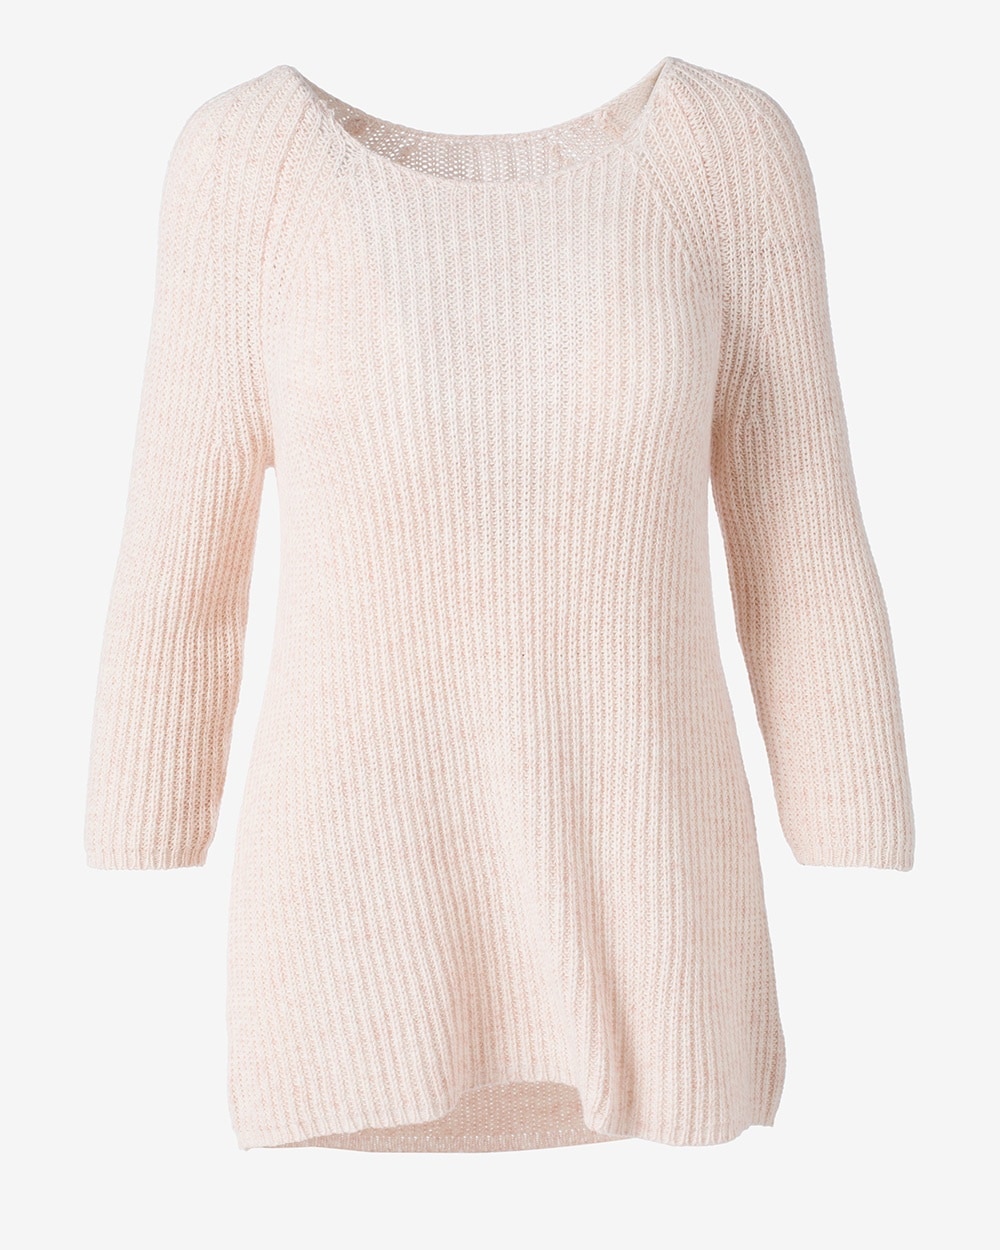 Hanna Heather 3/4-Sleeve Sweater